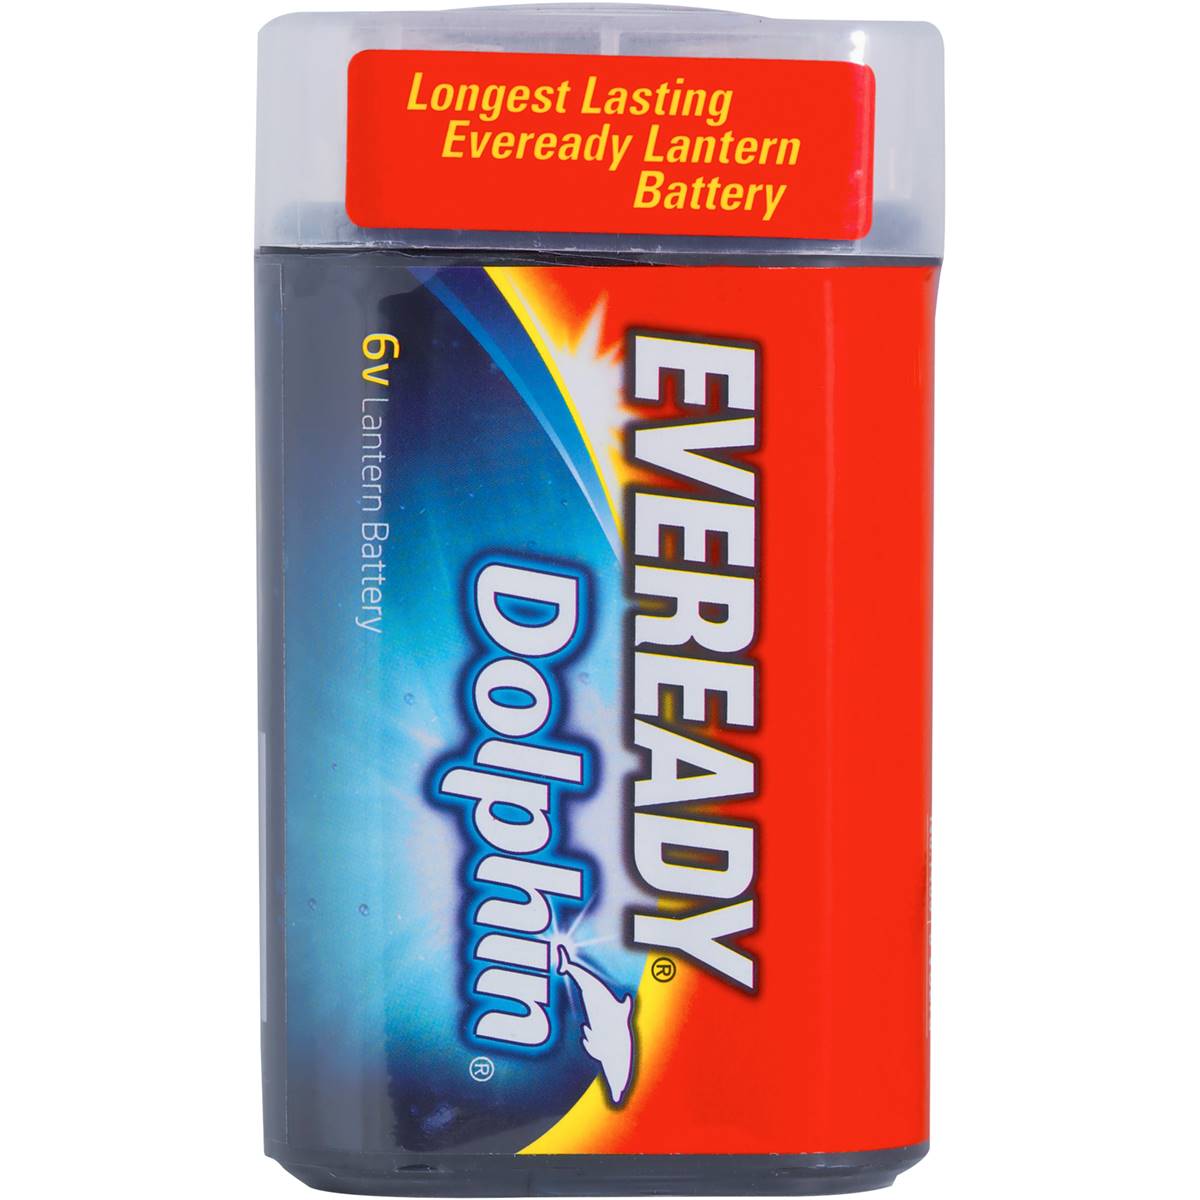 Eveready Dolphin 6v Lantern Batteries 1 Pack